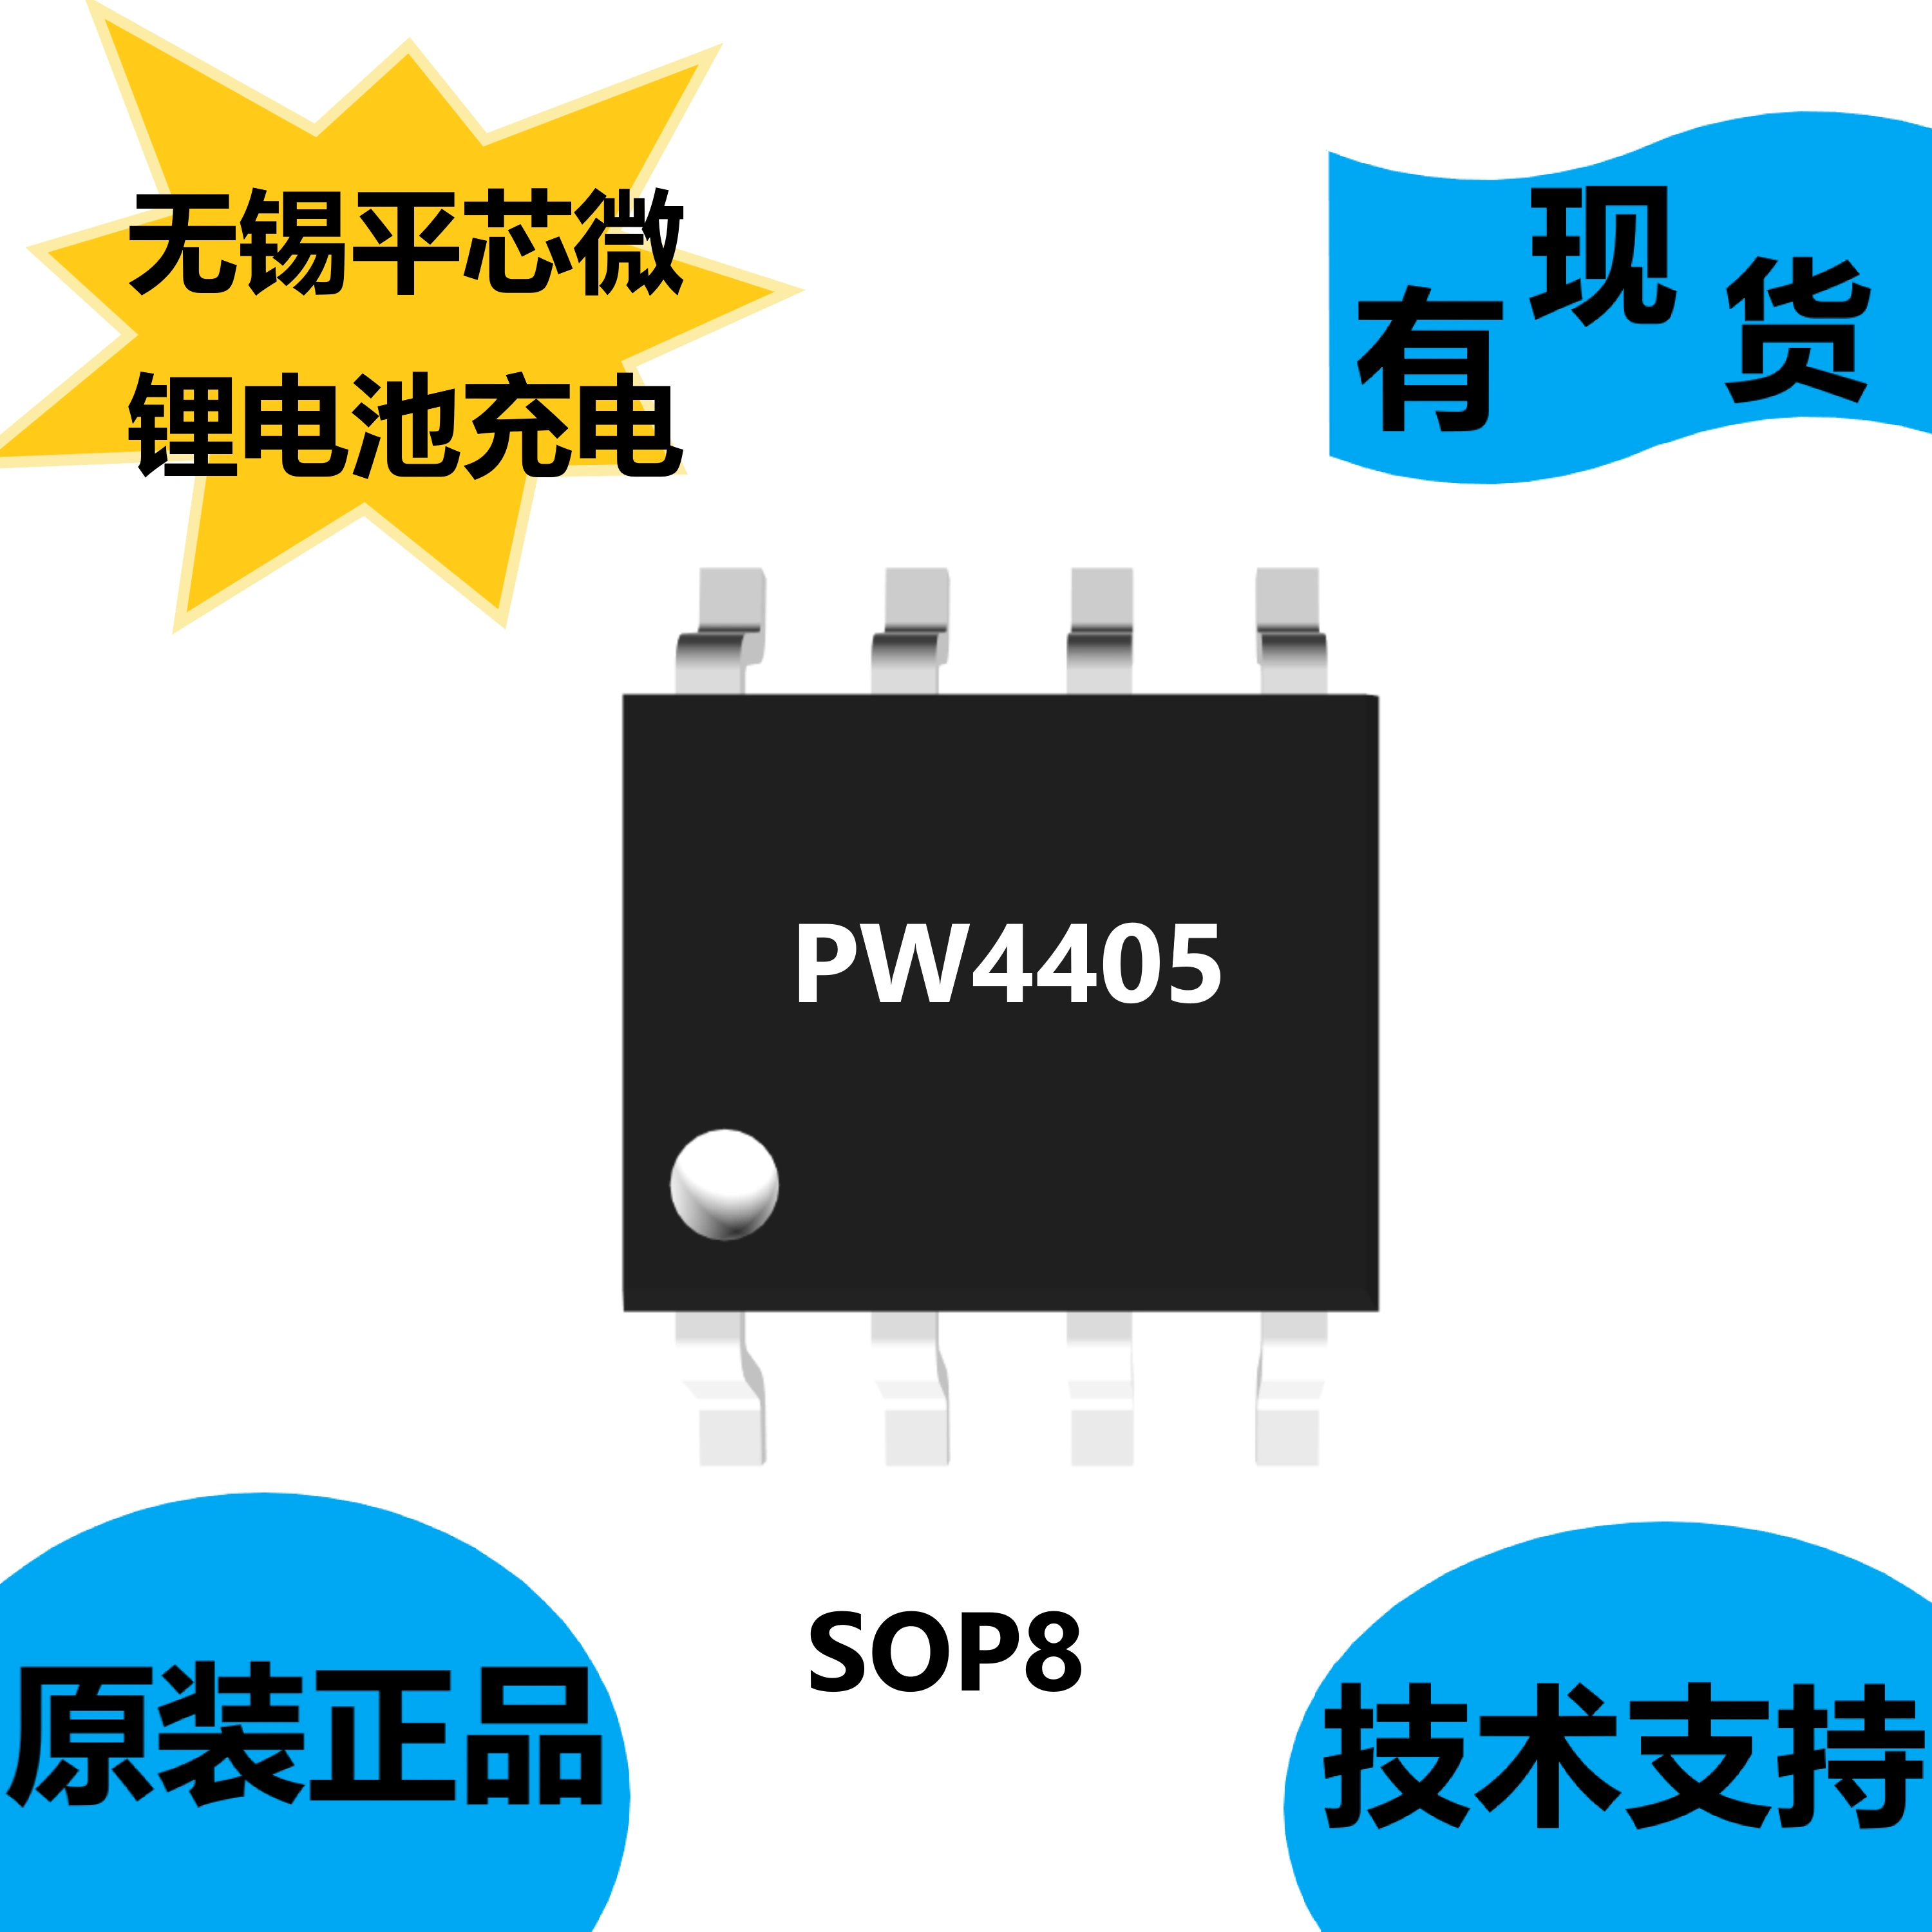 Cung cấp chip Vô Tích Pingxin Micro PW4405, gói SOP8, chức năng thích ứng nguồn đầu vào ic 7805 có chức năng gì ic 7805 có chức năng gì